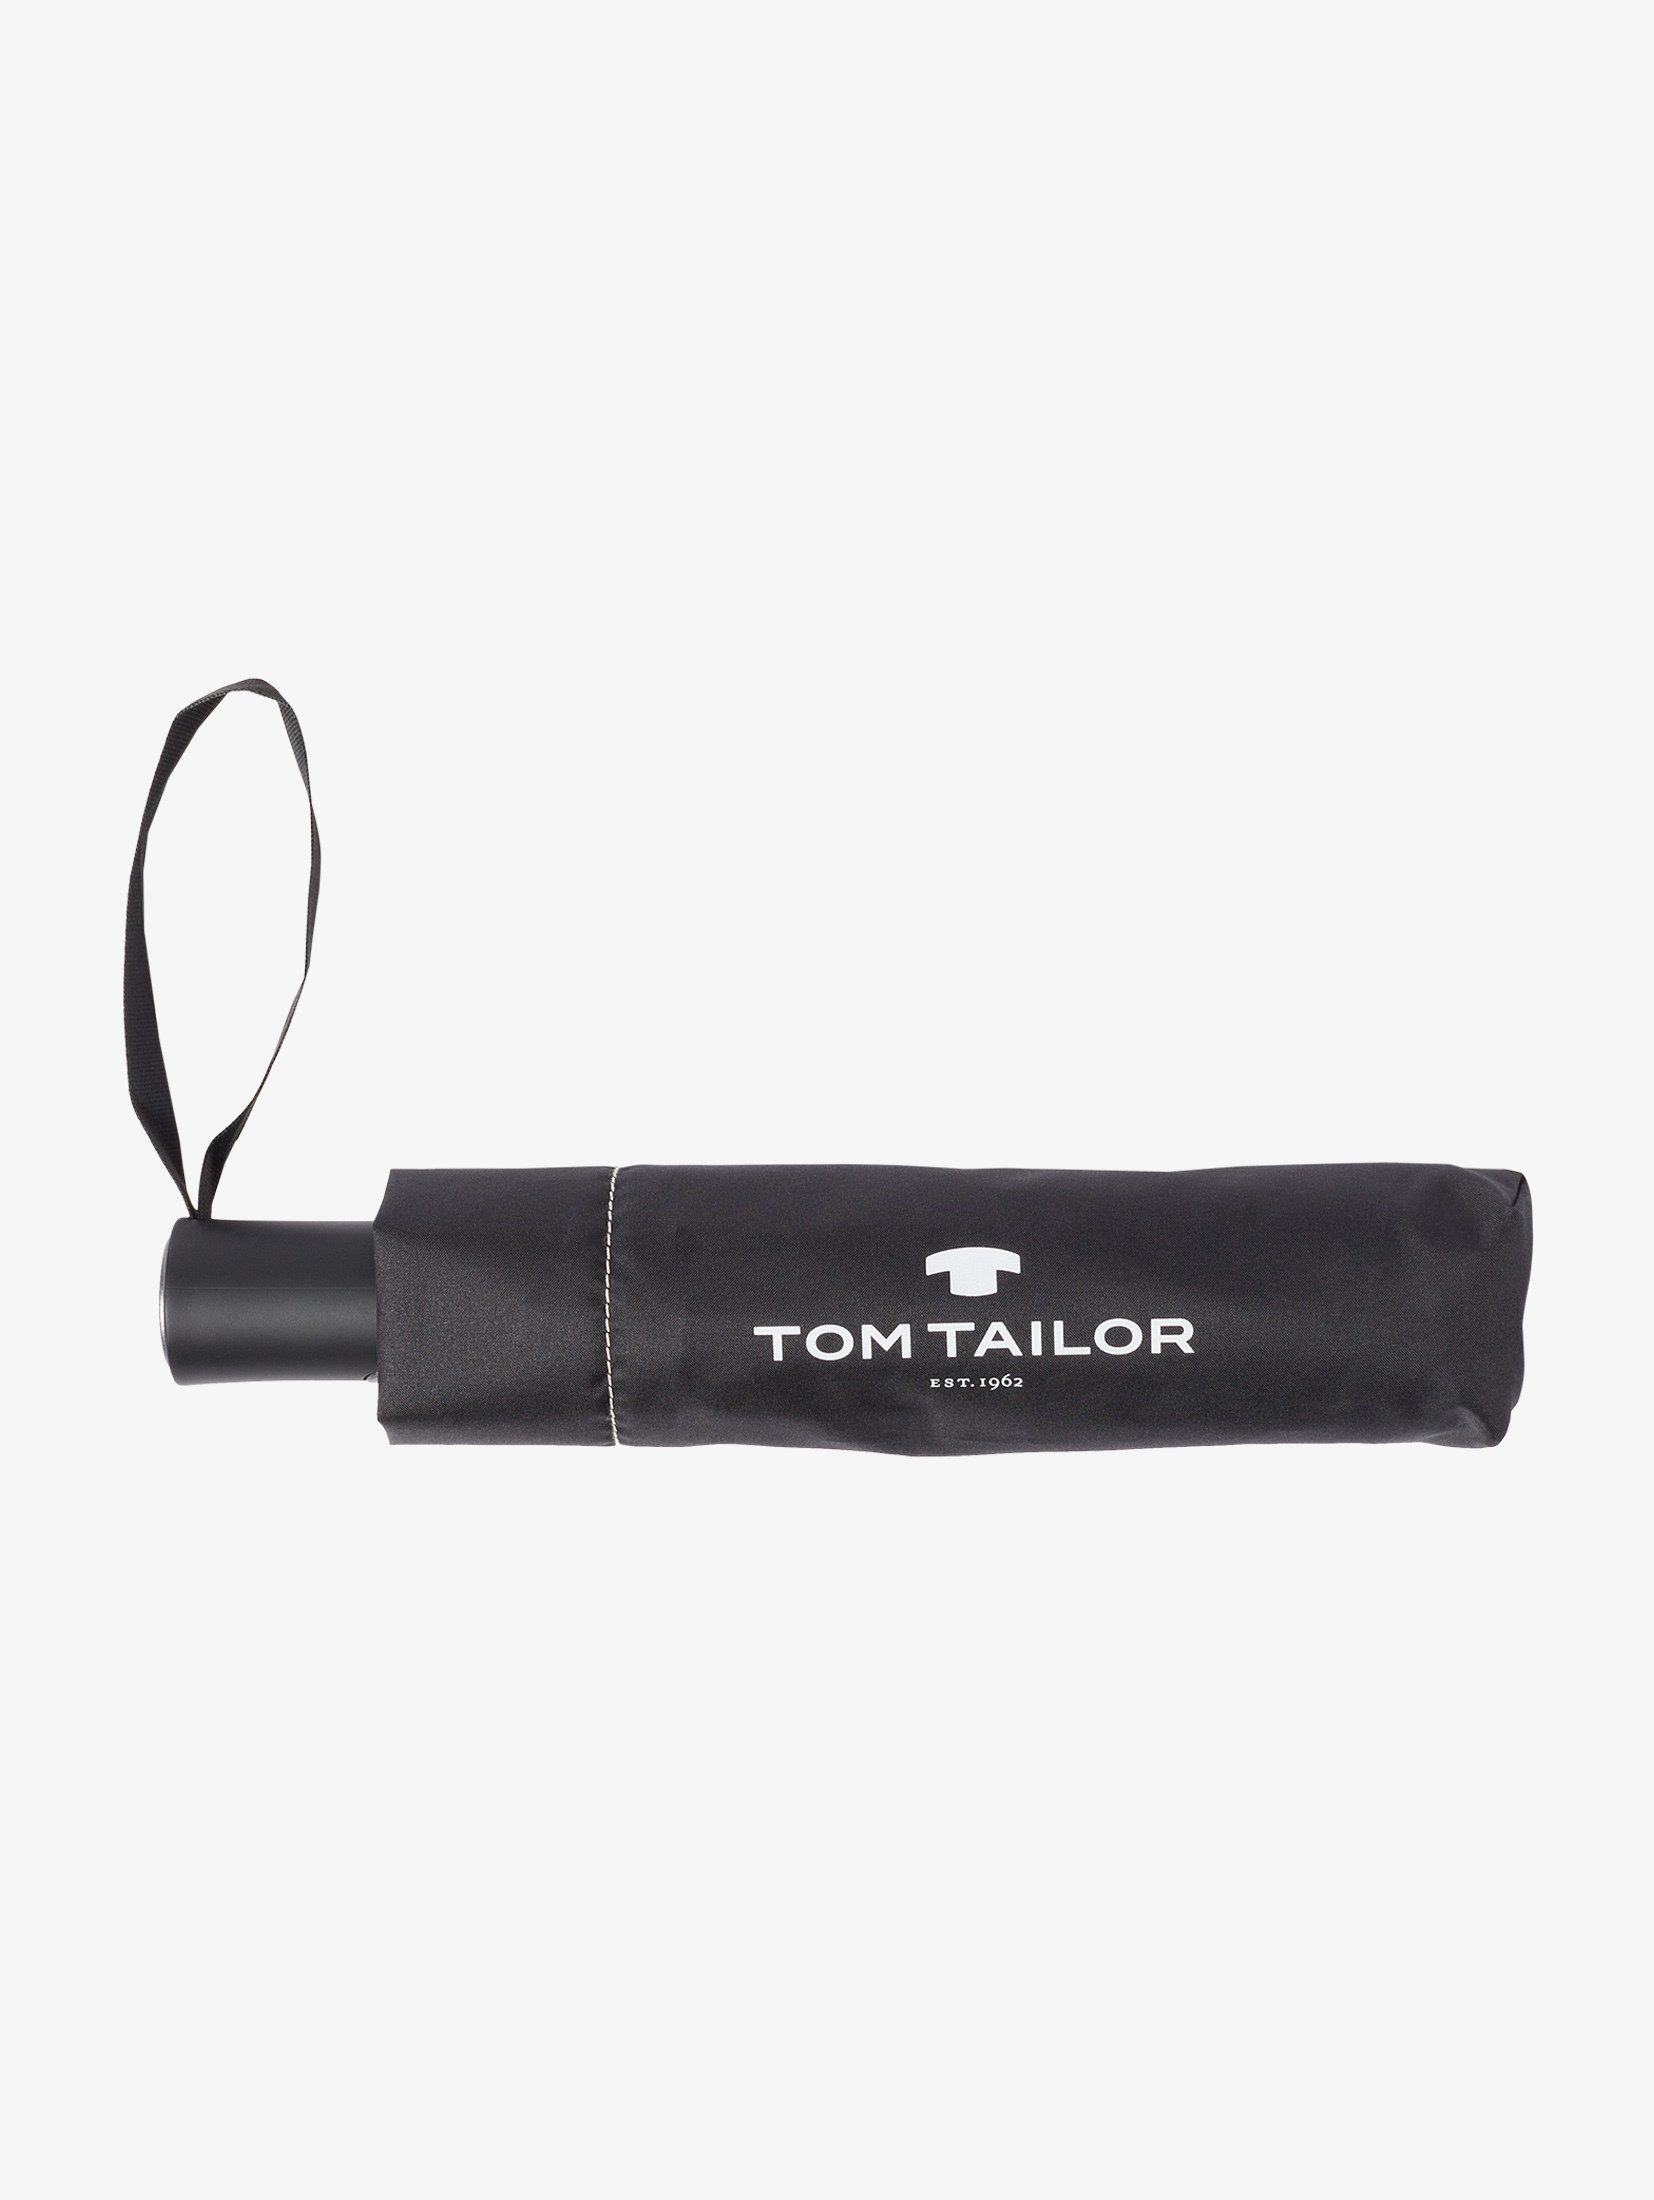 Taschenregenschirm Regenschirm TAILOR Automatik Kleiner black TOM